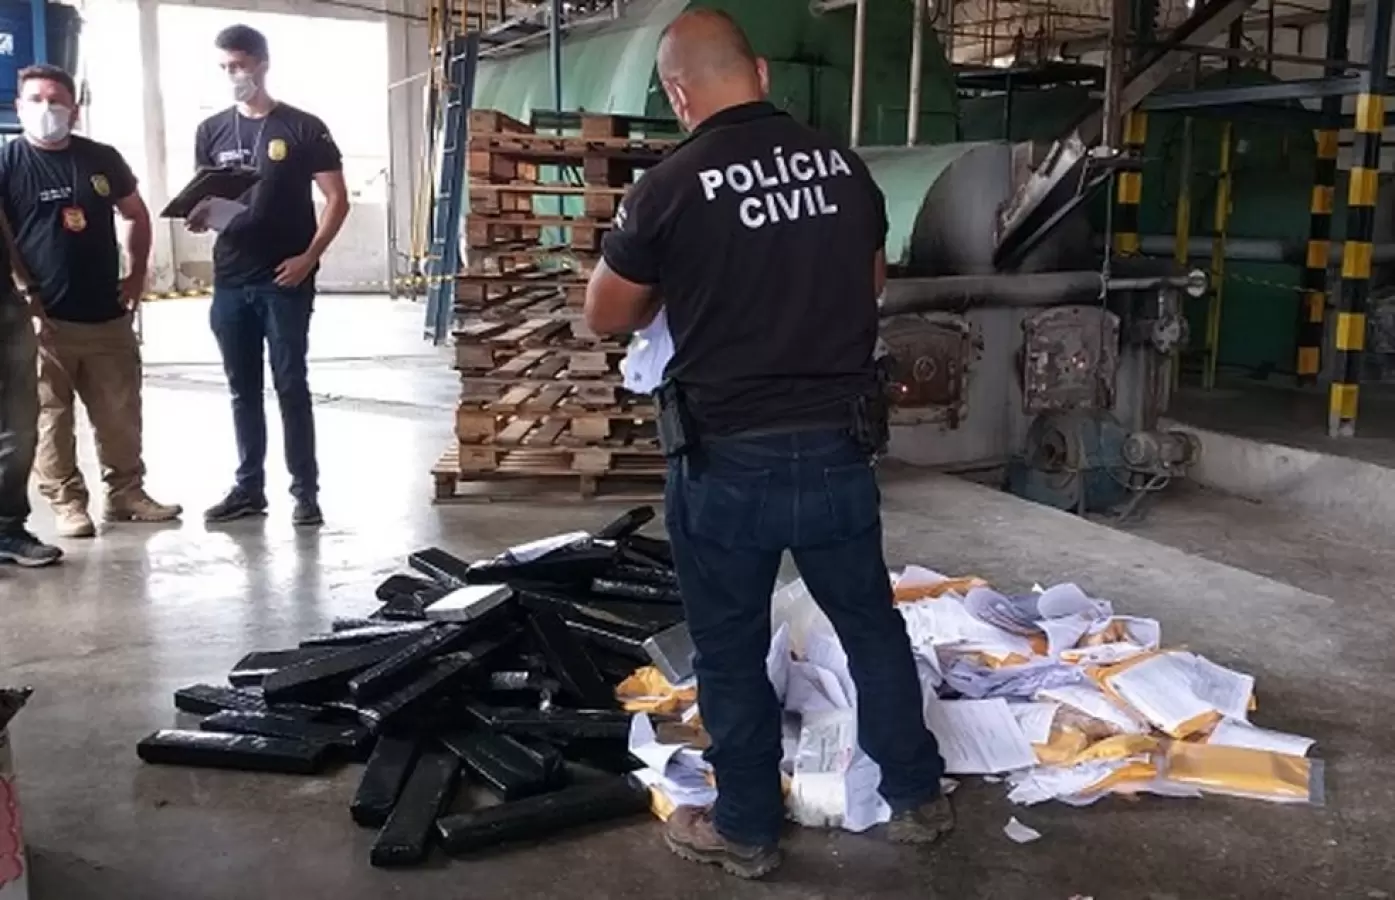 Polícia incinera mais de 140 quilos de drogas em Mossoró